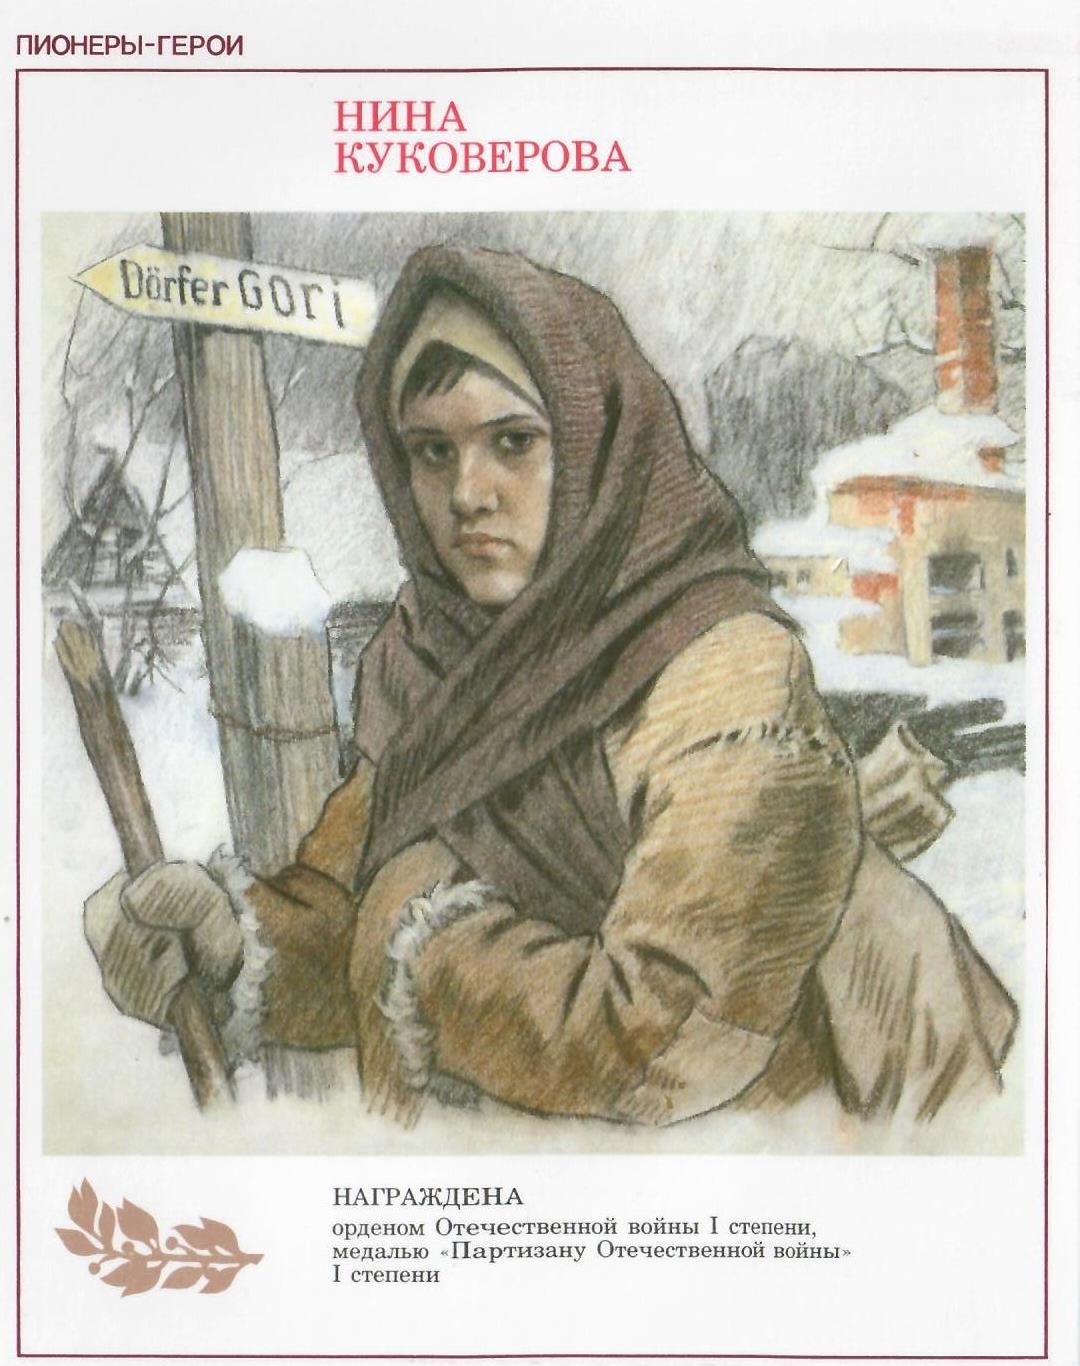 Нина Куковерова Пионер герой